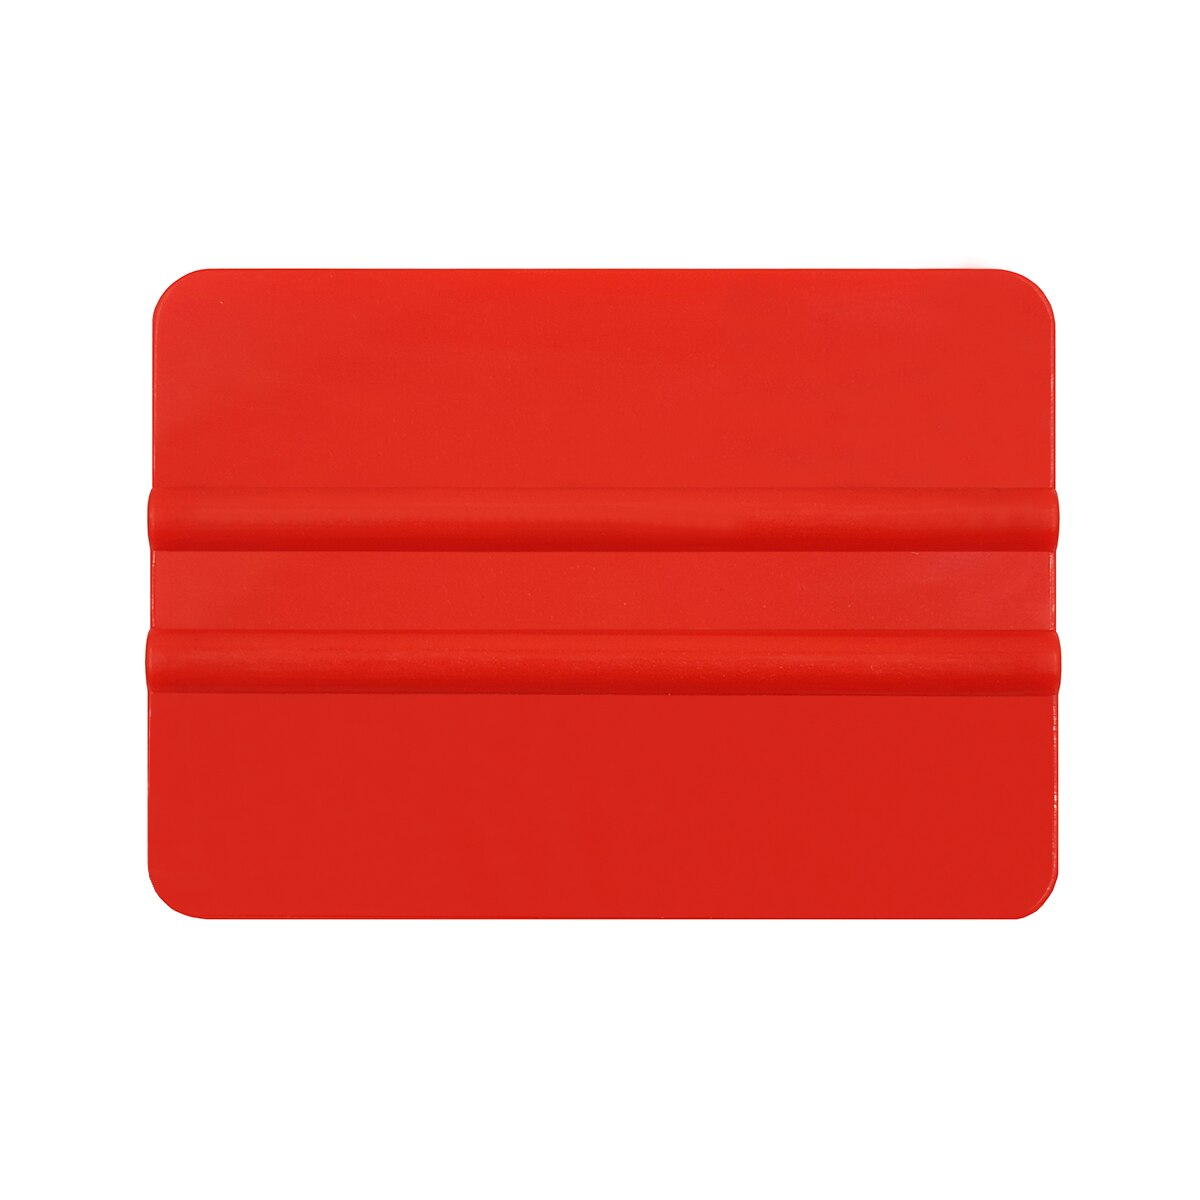 Rød gummiskraber bil klistermærke installere skraber værktøjer vinyl bil film wrap plast skraber vinduesfarver værktøjer 10 x 7.3cm